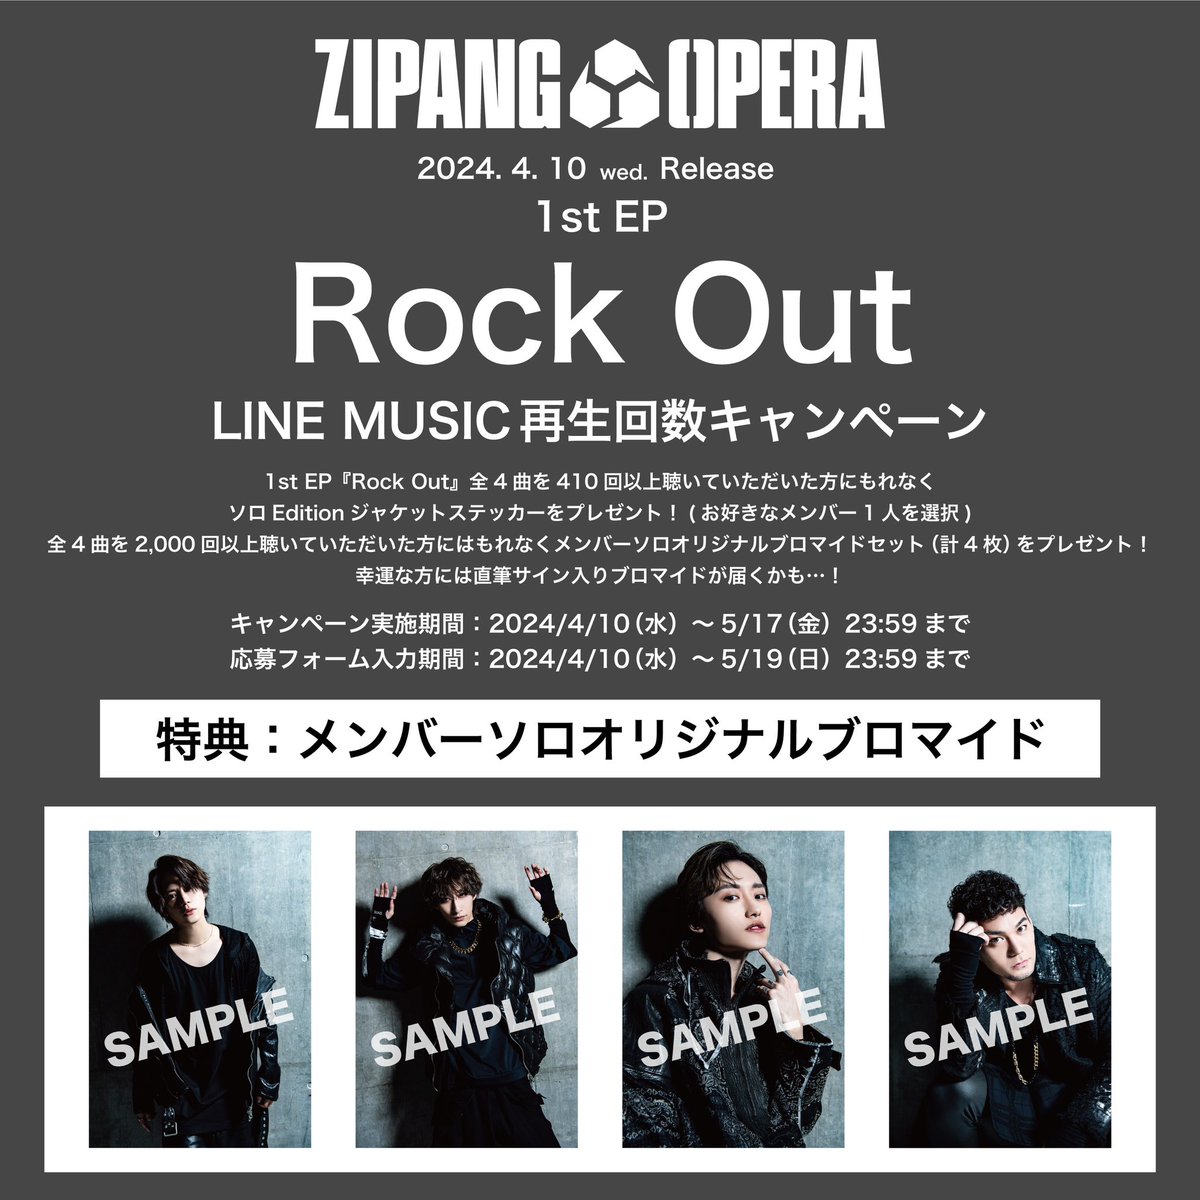 #ZIPANGOPERA 1st EP『Rock Out』 LINE MUSICキャンペーン特典 『メンバーソロオリジナルブロマイド』のデザインが決定🔥 再生期間は明日5/17(金)23:59まで⚓️ 限定特典を是非ゲットしてください😄✨ ✍️ 応募期間 2024/4/10(水)～5/19(日)23:59まで 🔗 ldhrecords.jp/11503/ #RockOut